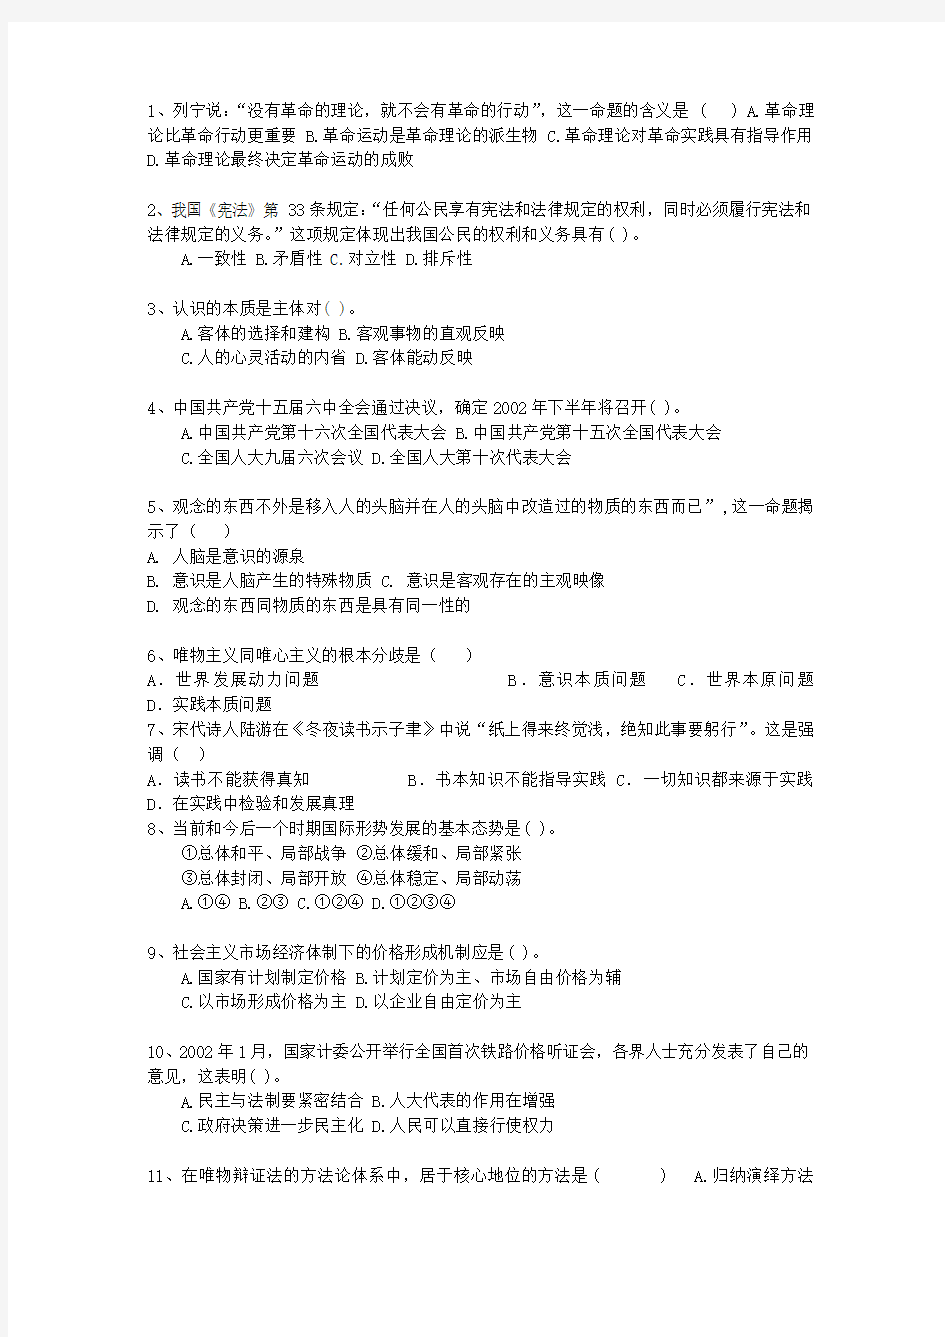 2014广东省公务员考试公共基础知识真题演练汇总